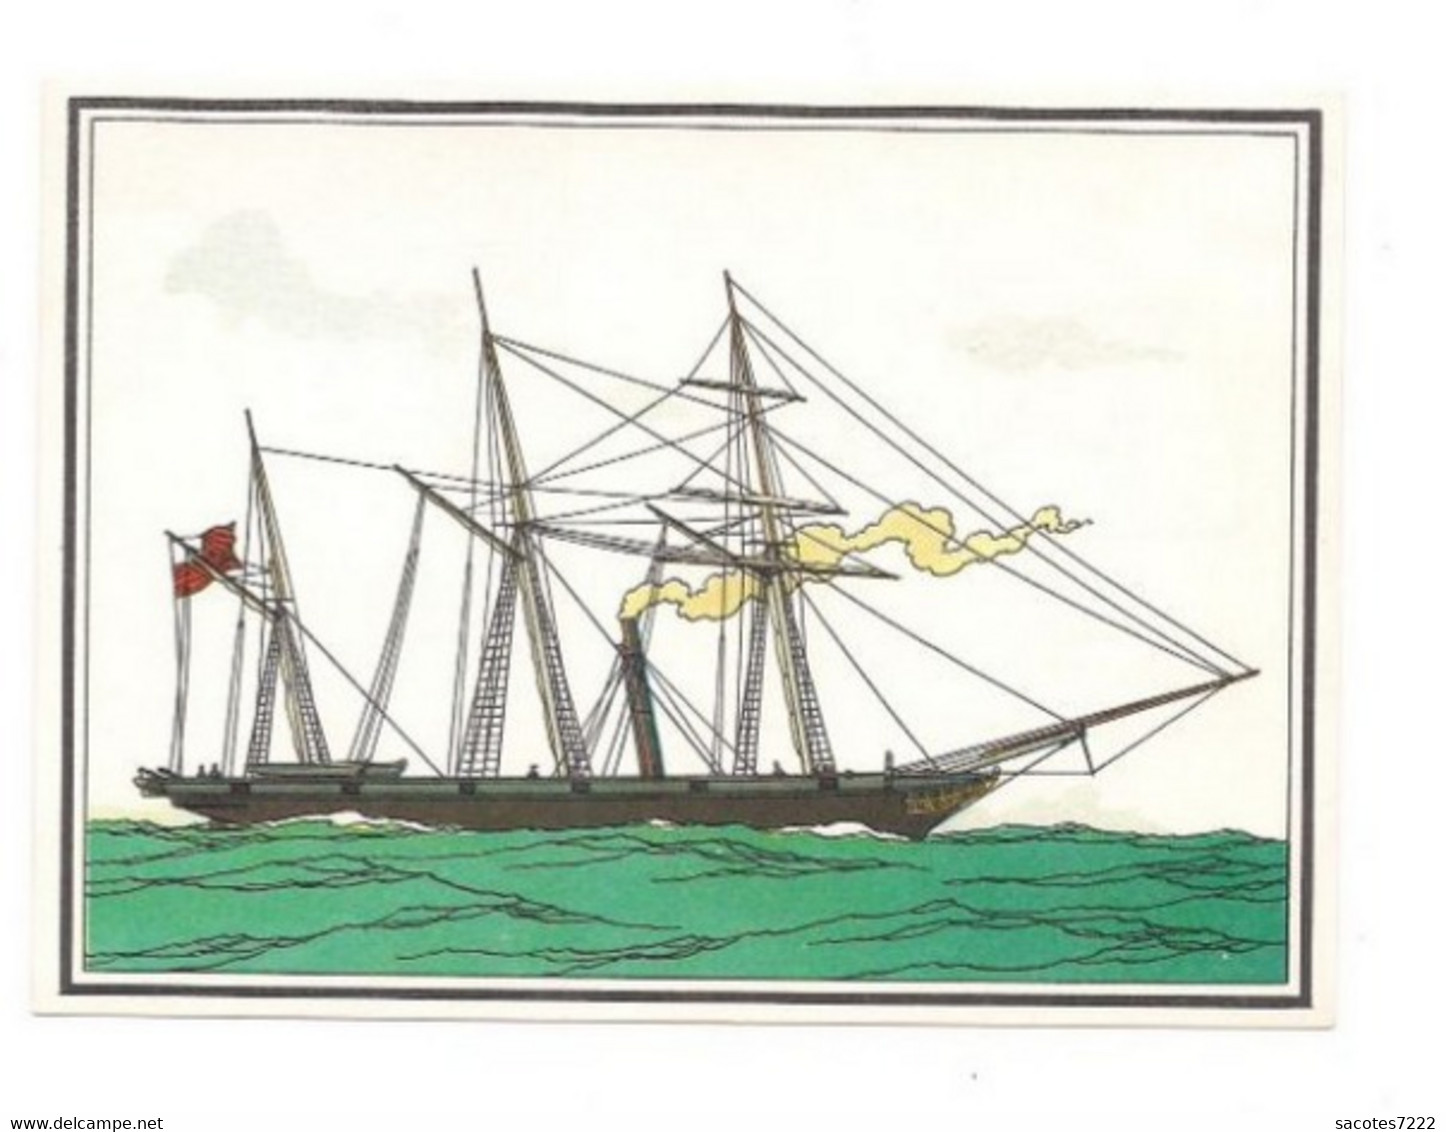 Collection Des CADEAUX TINTIN - CHROMO MARINE  : VAPEUR - 1839 - Angleterre    Série 15 N° 109 - - Chromos